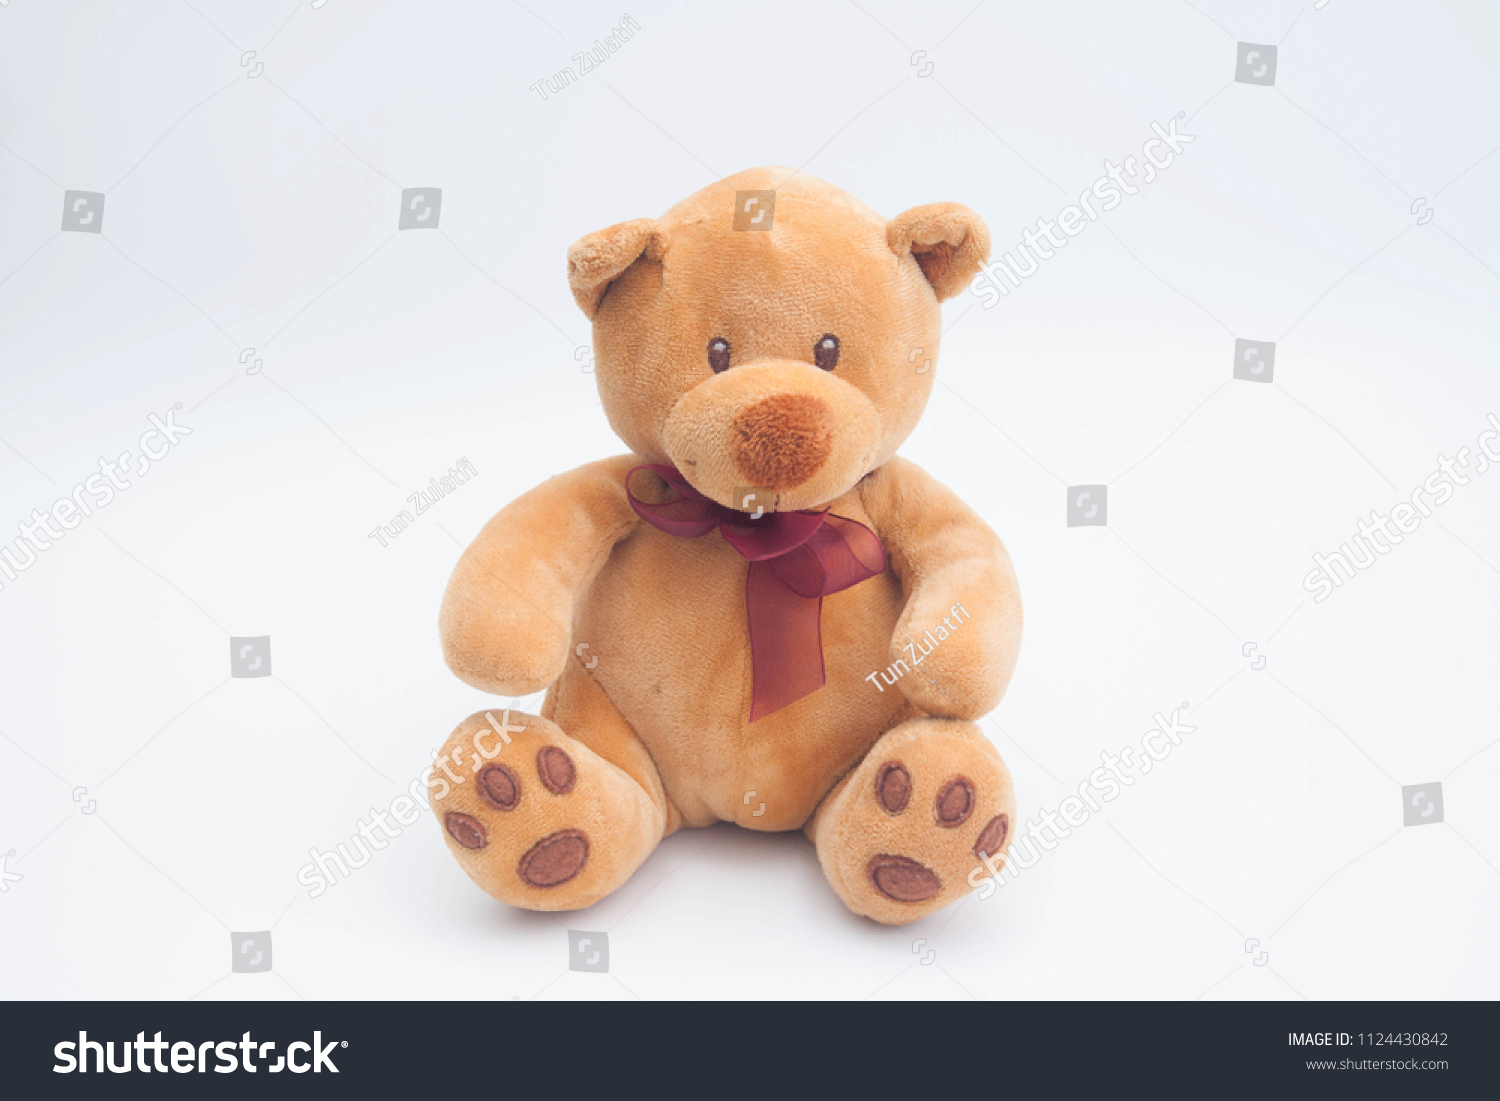 plain teddy bear